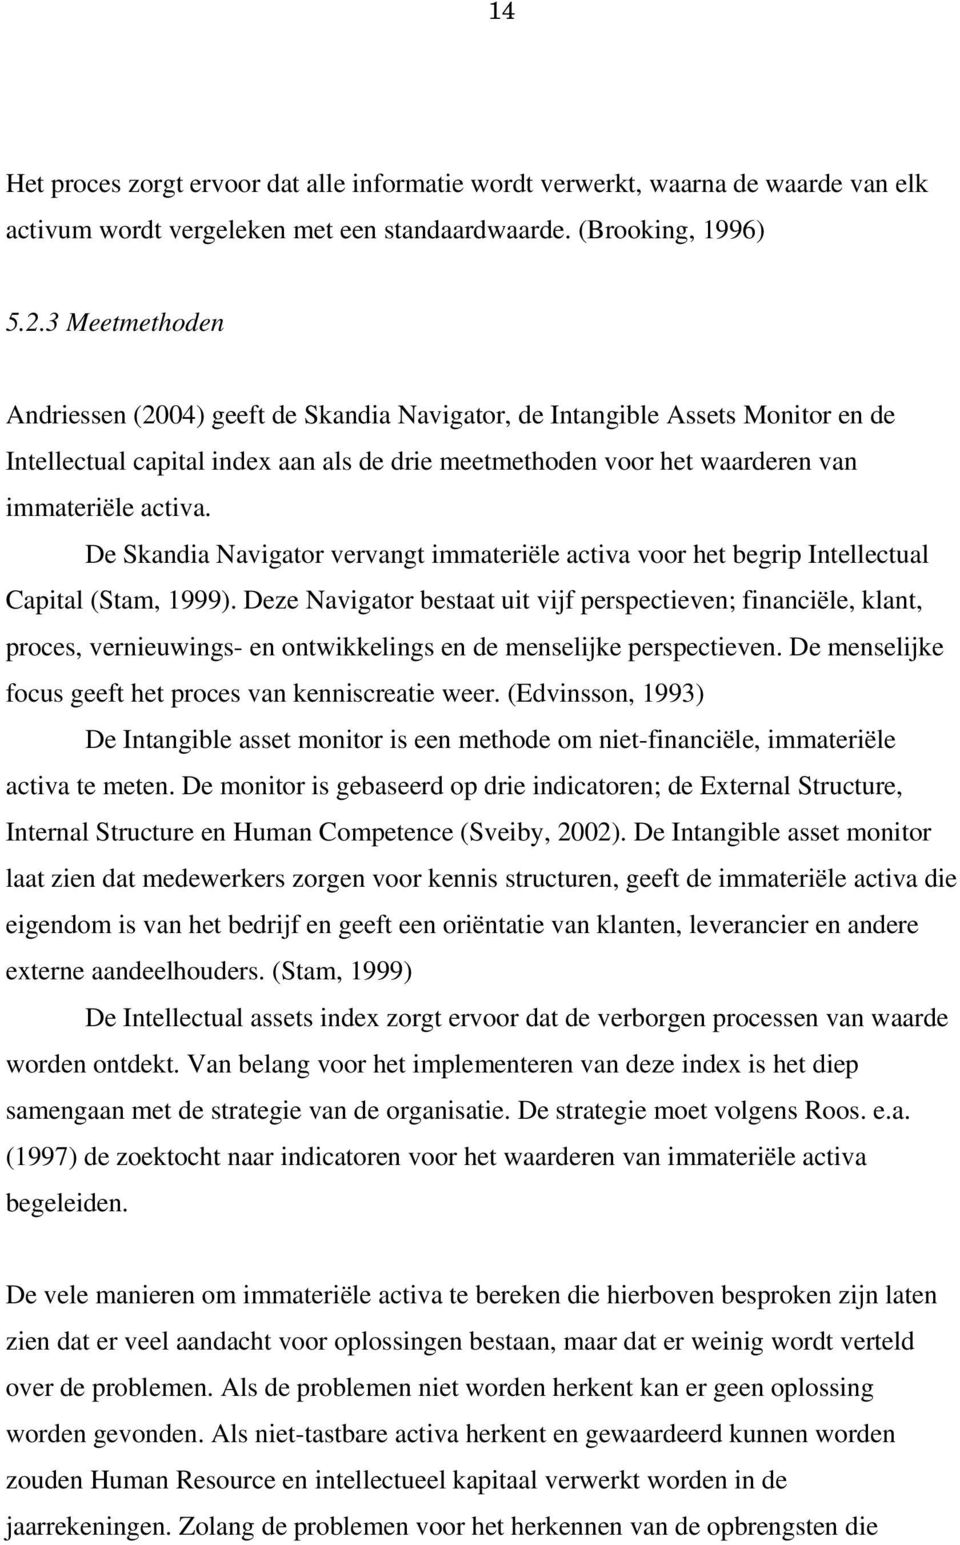 De Skandia Navigator vervangt immateriële activa voor het begrip Intellectual Capital (Stam, 1999).